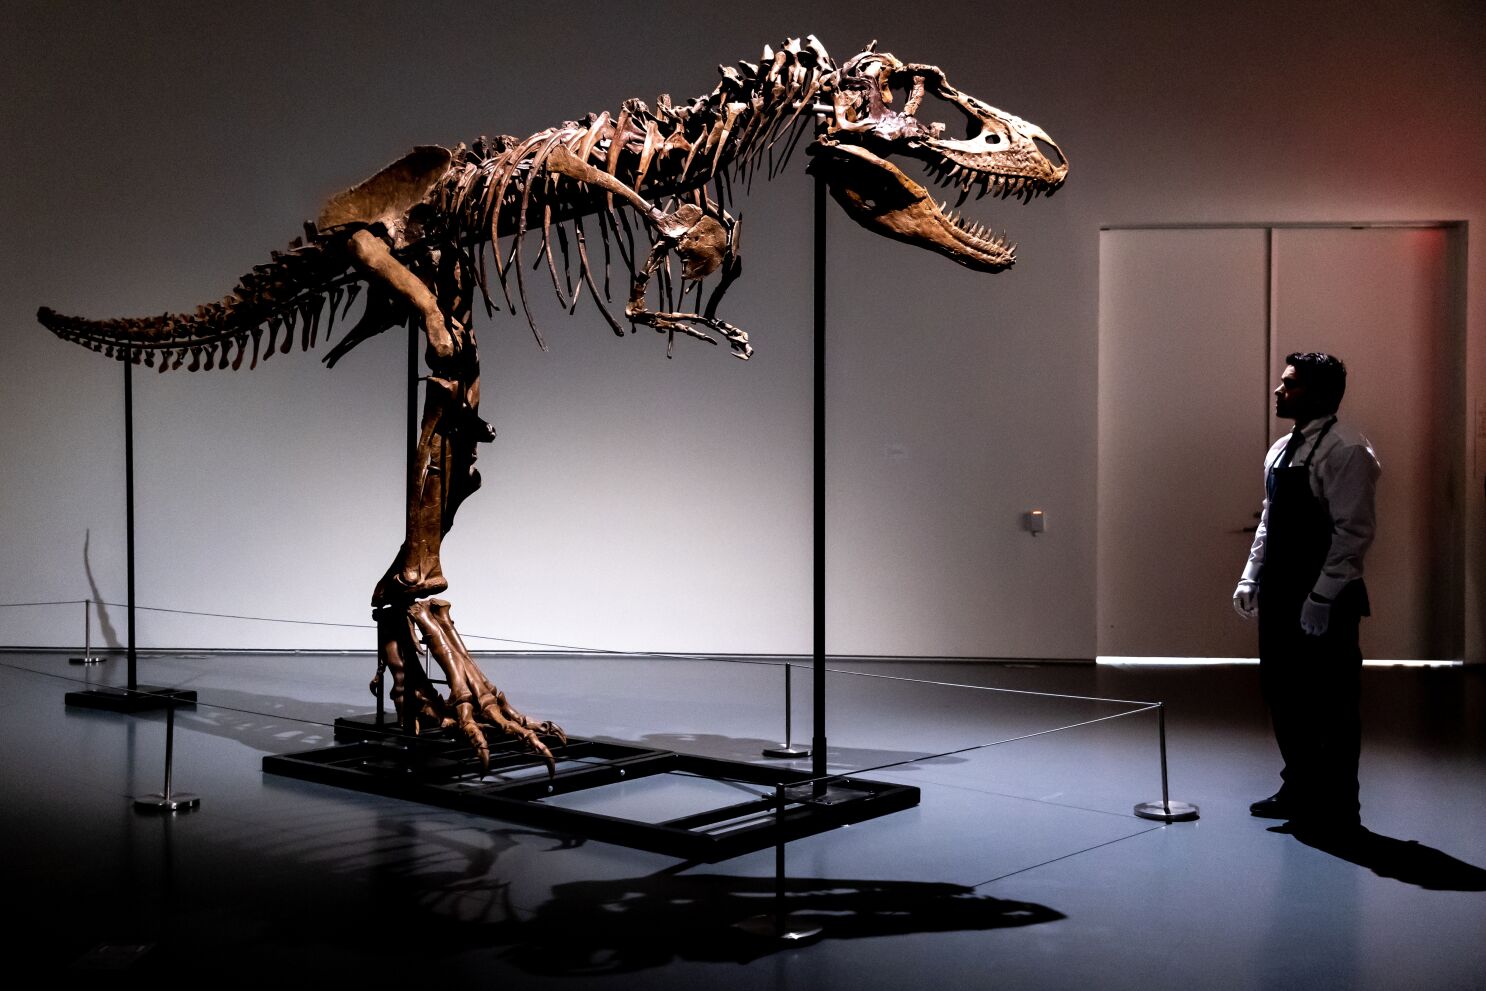 Subastan dinosaurio de hace 76 millones de años - Los Angeles Times